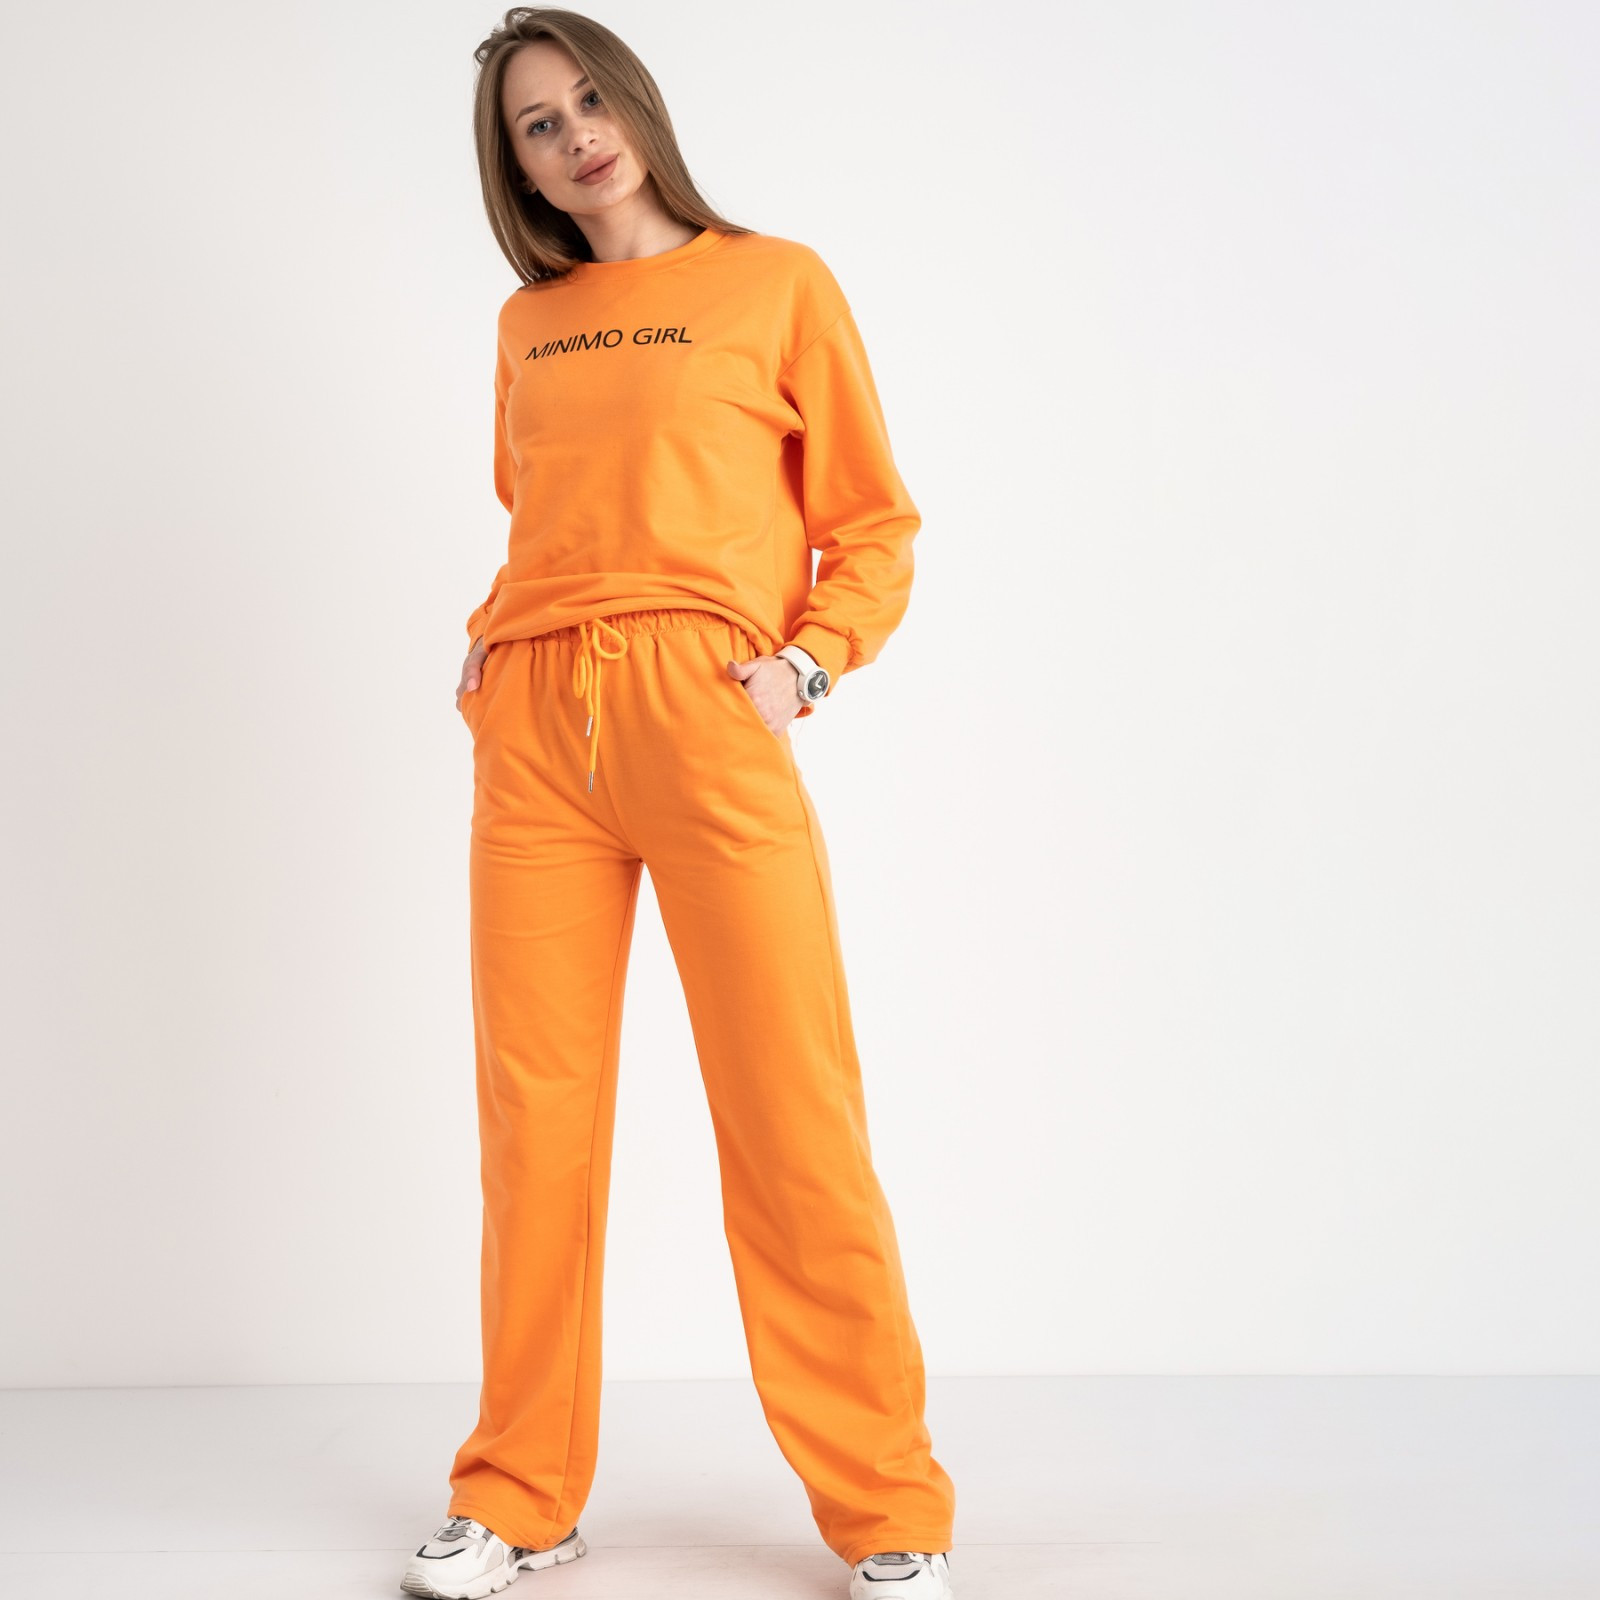 7807-2 M&C спортивный костюм женский оранжевый (3 ед. размеры: универсал S-L )